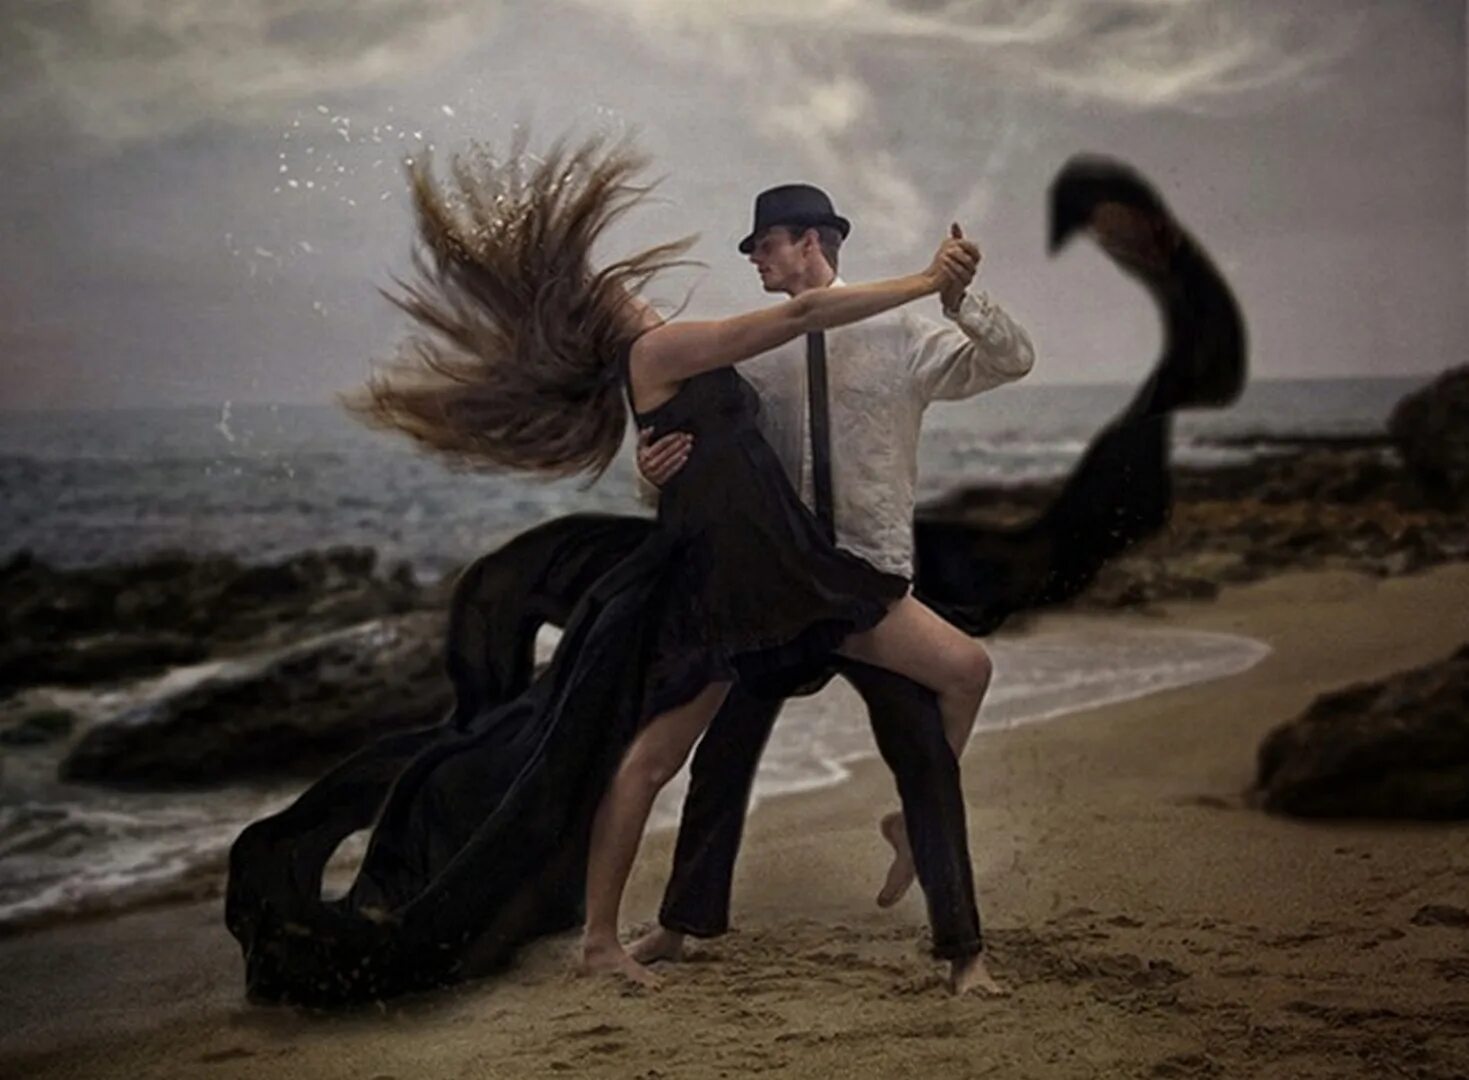 Танец под песню последний танец. Танец мужчины и женщины. Танцы для влюбленных. Влюбленные в танце. Двое танцуют.